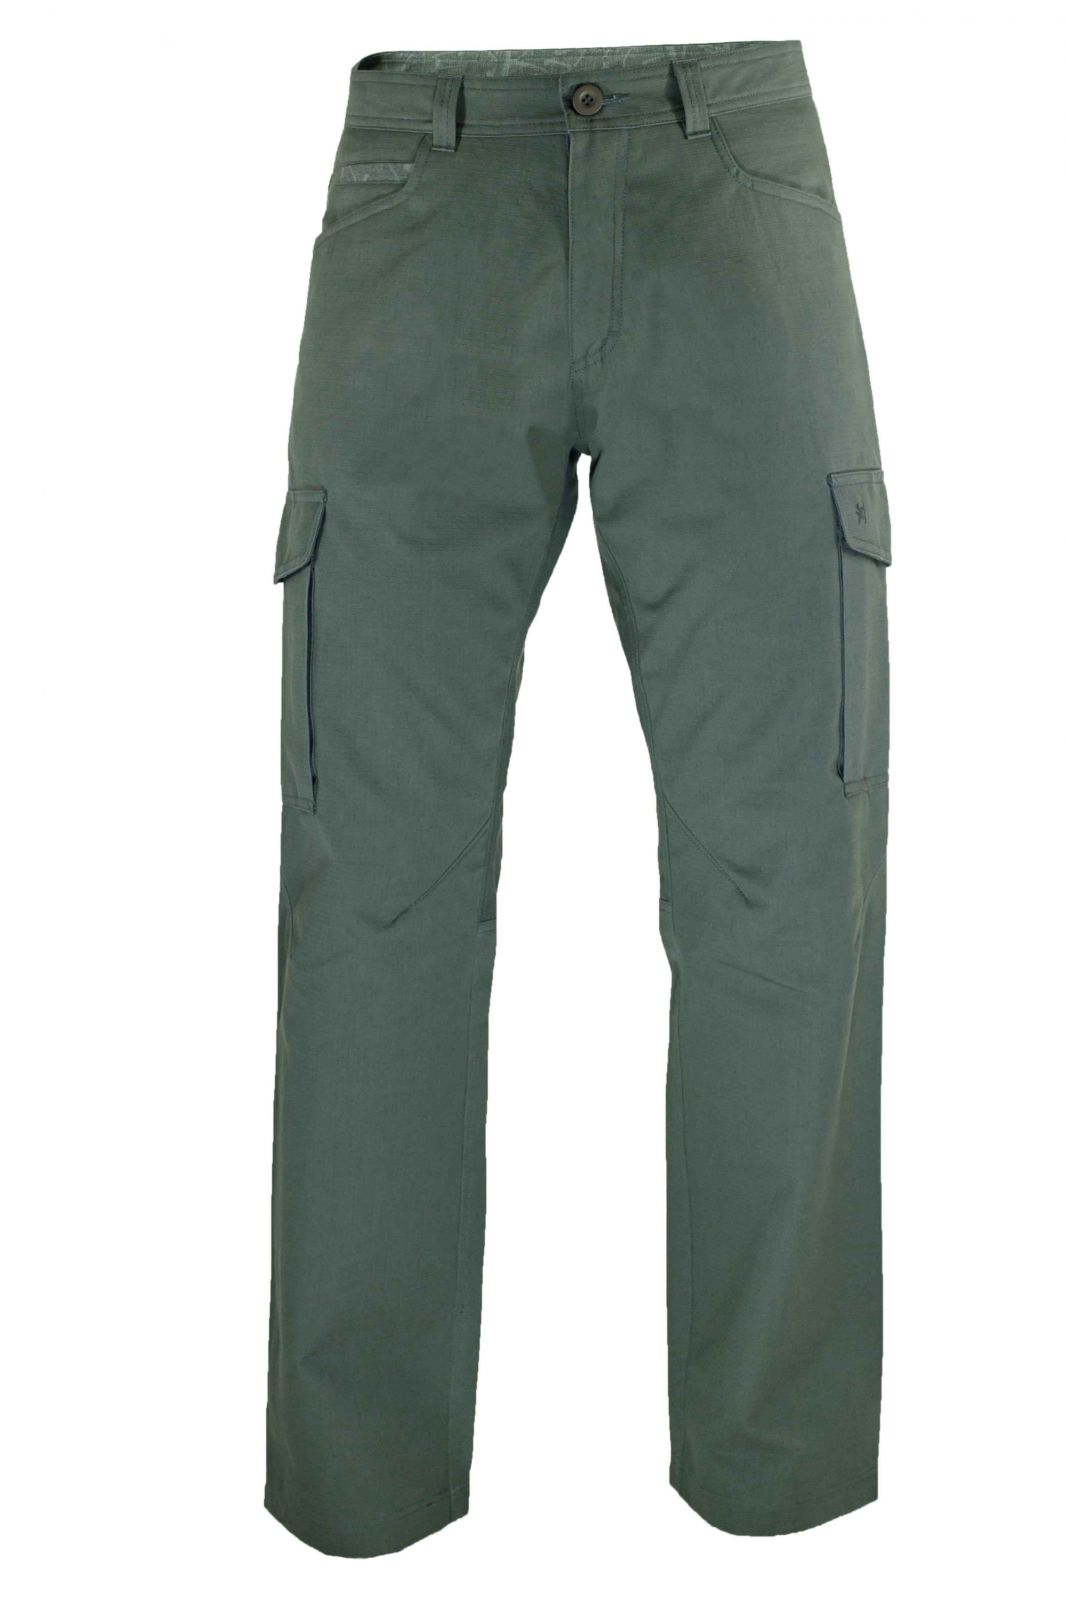 Warmpeace Travers grey pánské kalhoty z vyšší gramáže